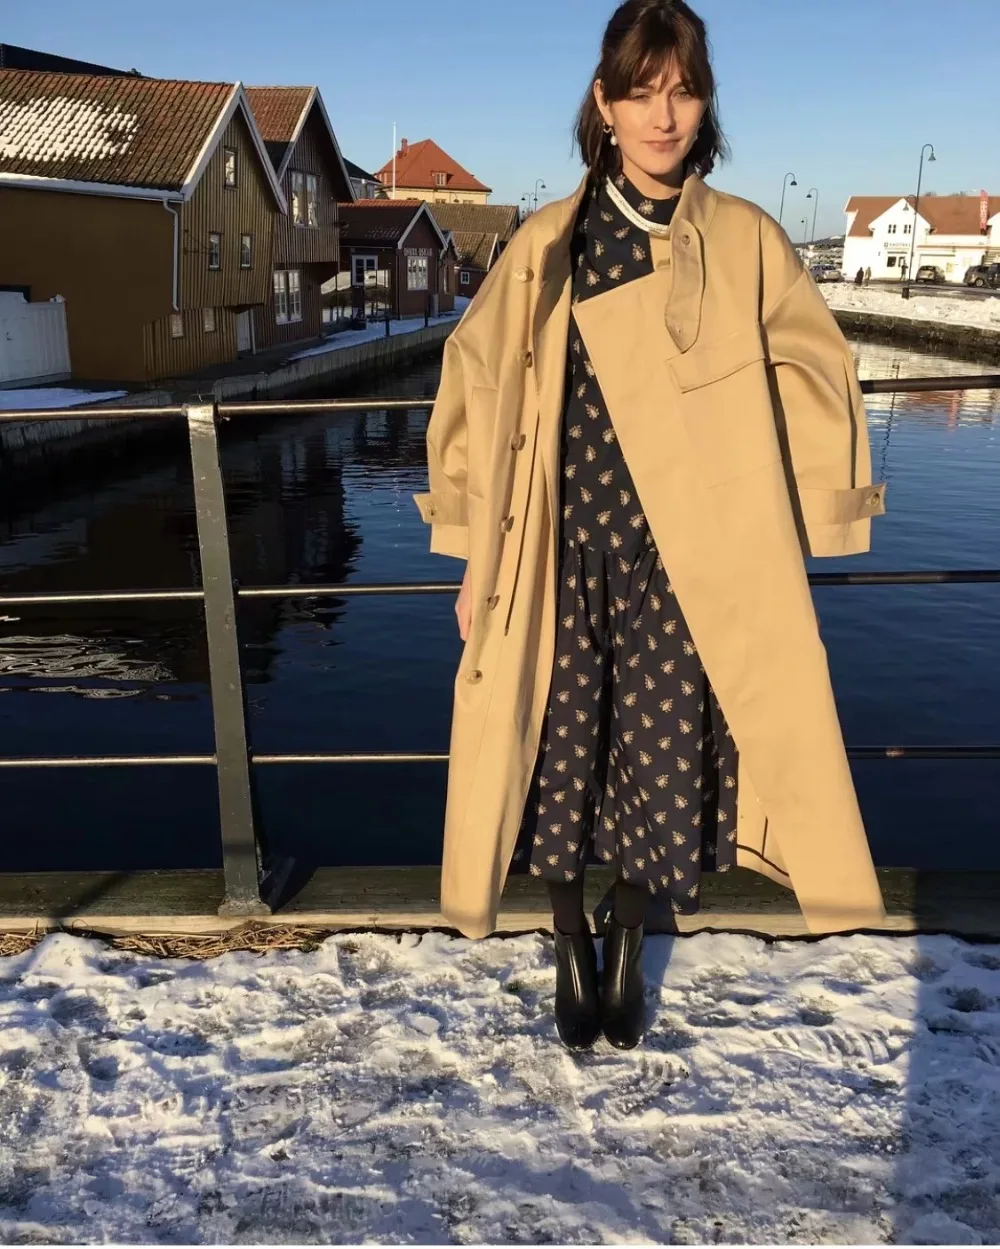 Увядший зимний Тренч, пальто для женщин, английская мода, блогер, Ретро стиль, большие карманы, негабаритный ассиметричный стиль, длинное пальто для женщин